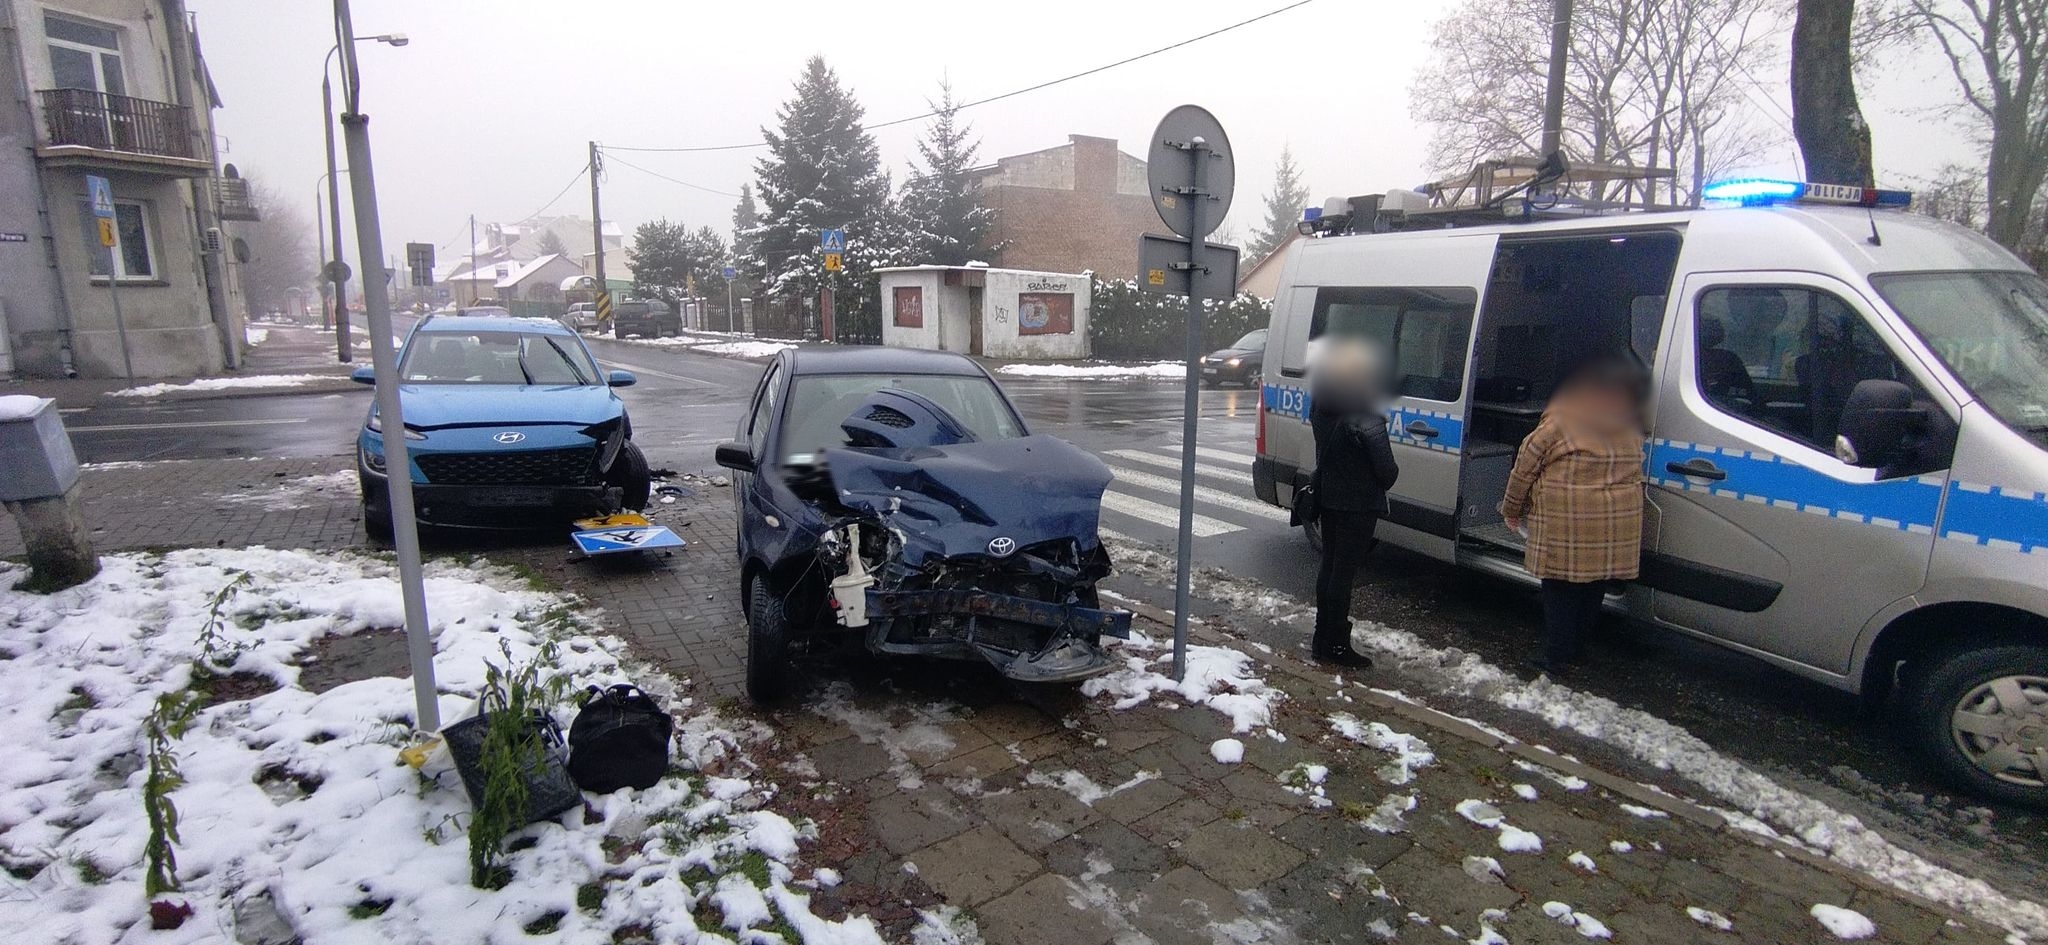 Zderzenie na skrzyżowaniu w Lublinie, dwa pojazdy rozbite (zdjęcia)